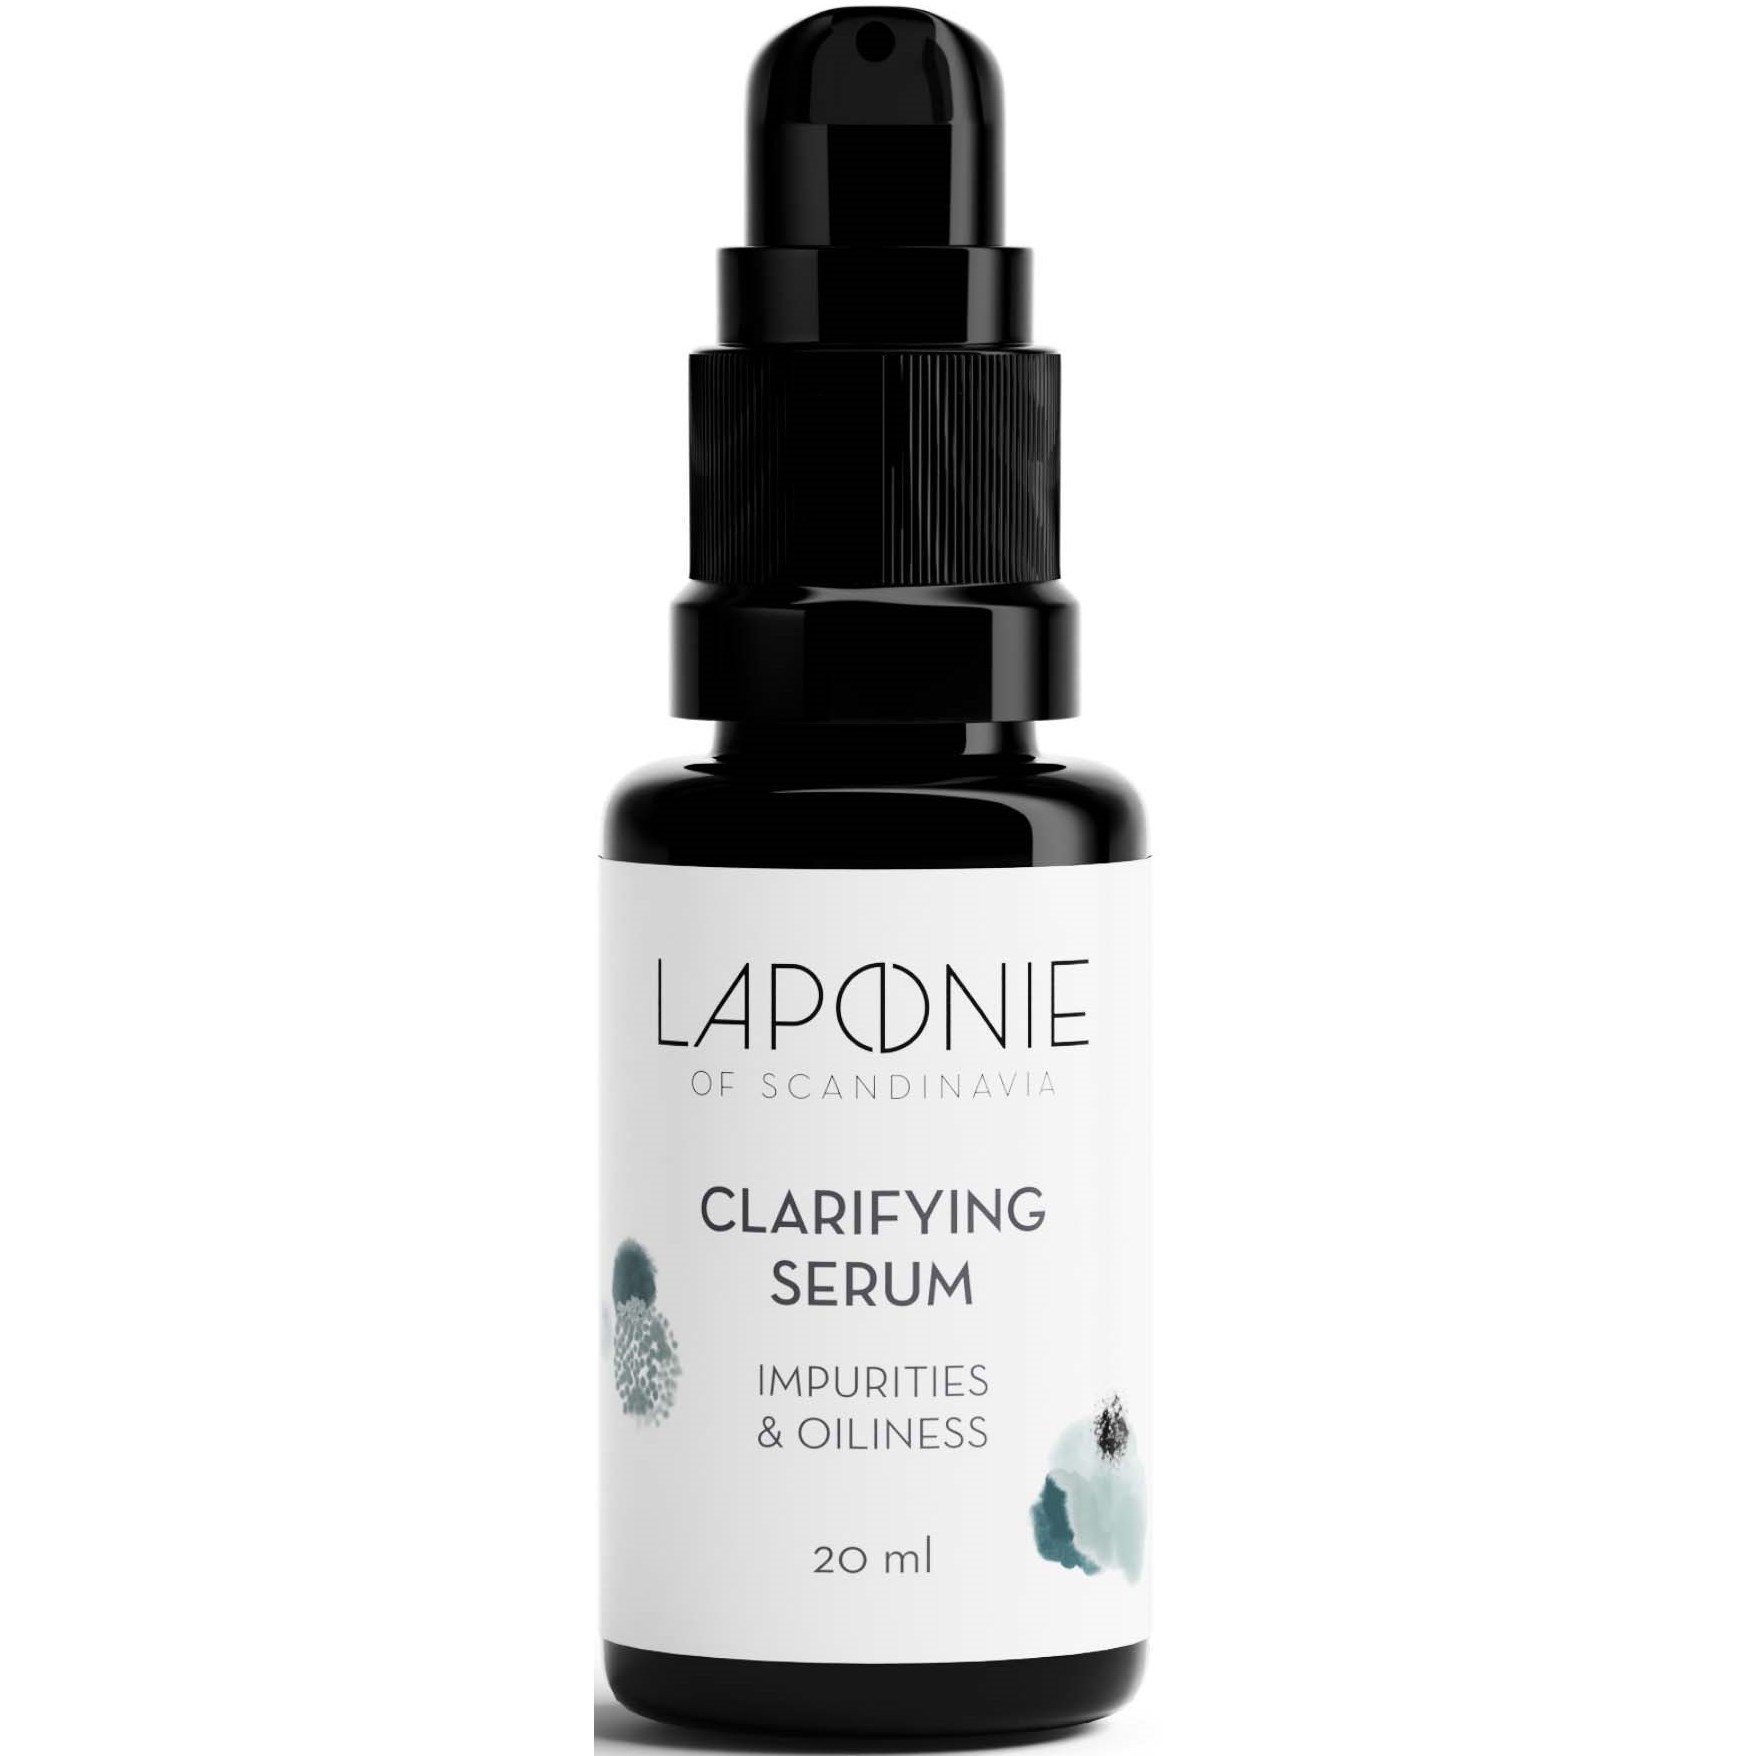 Laponie of Scandinavia Clarifying Serum 20 ml